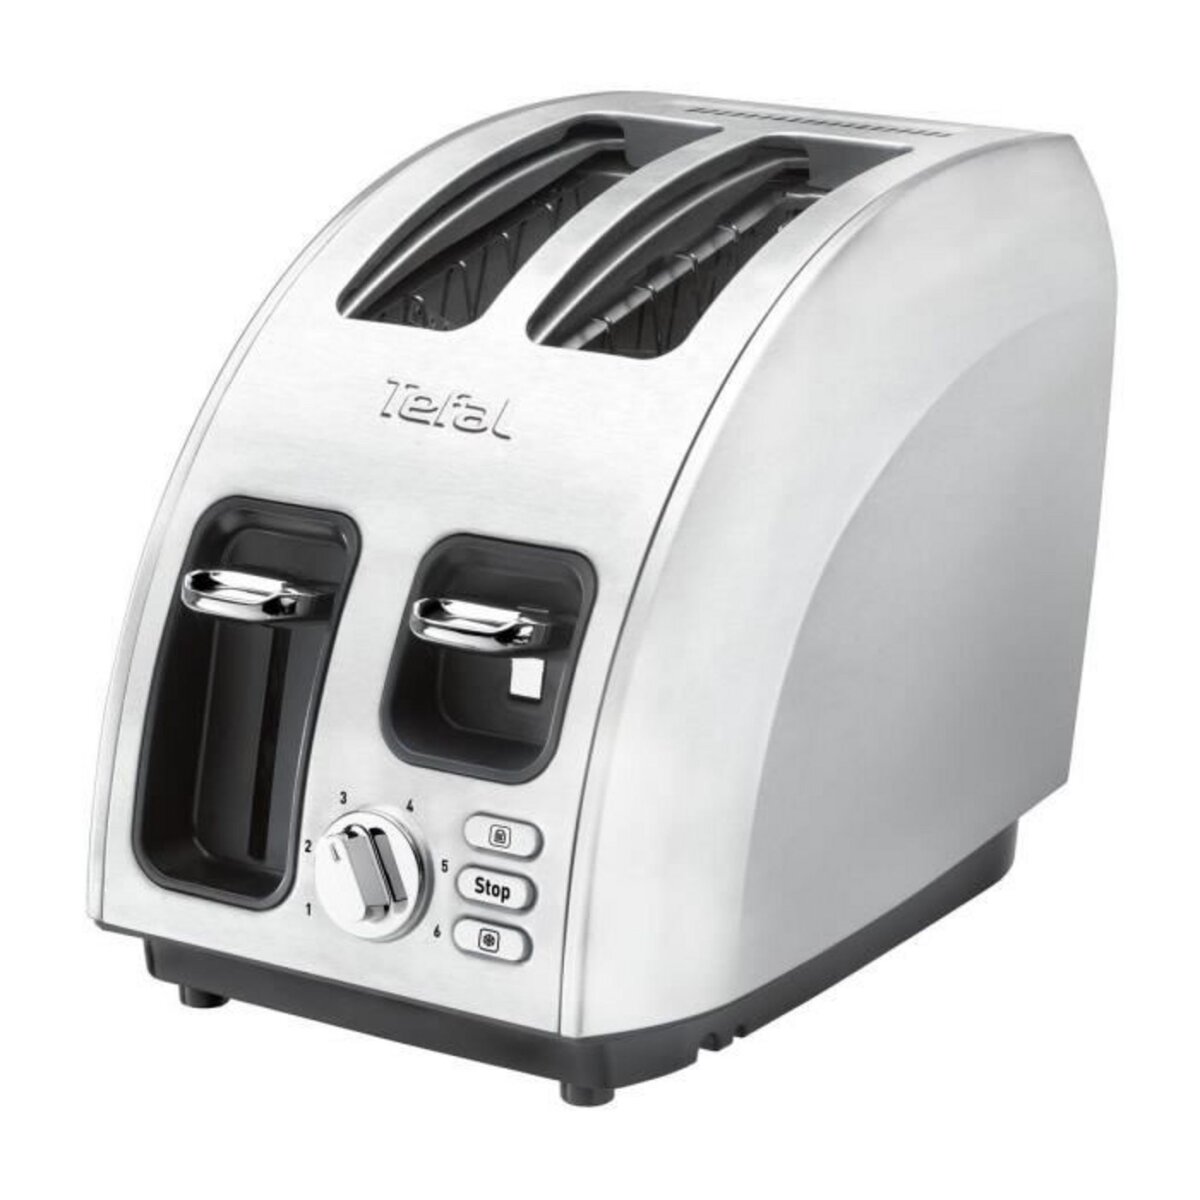 TEFAL Toaster TT562E10 Avanti inox